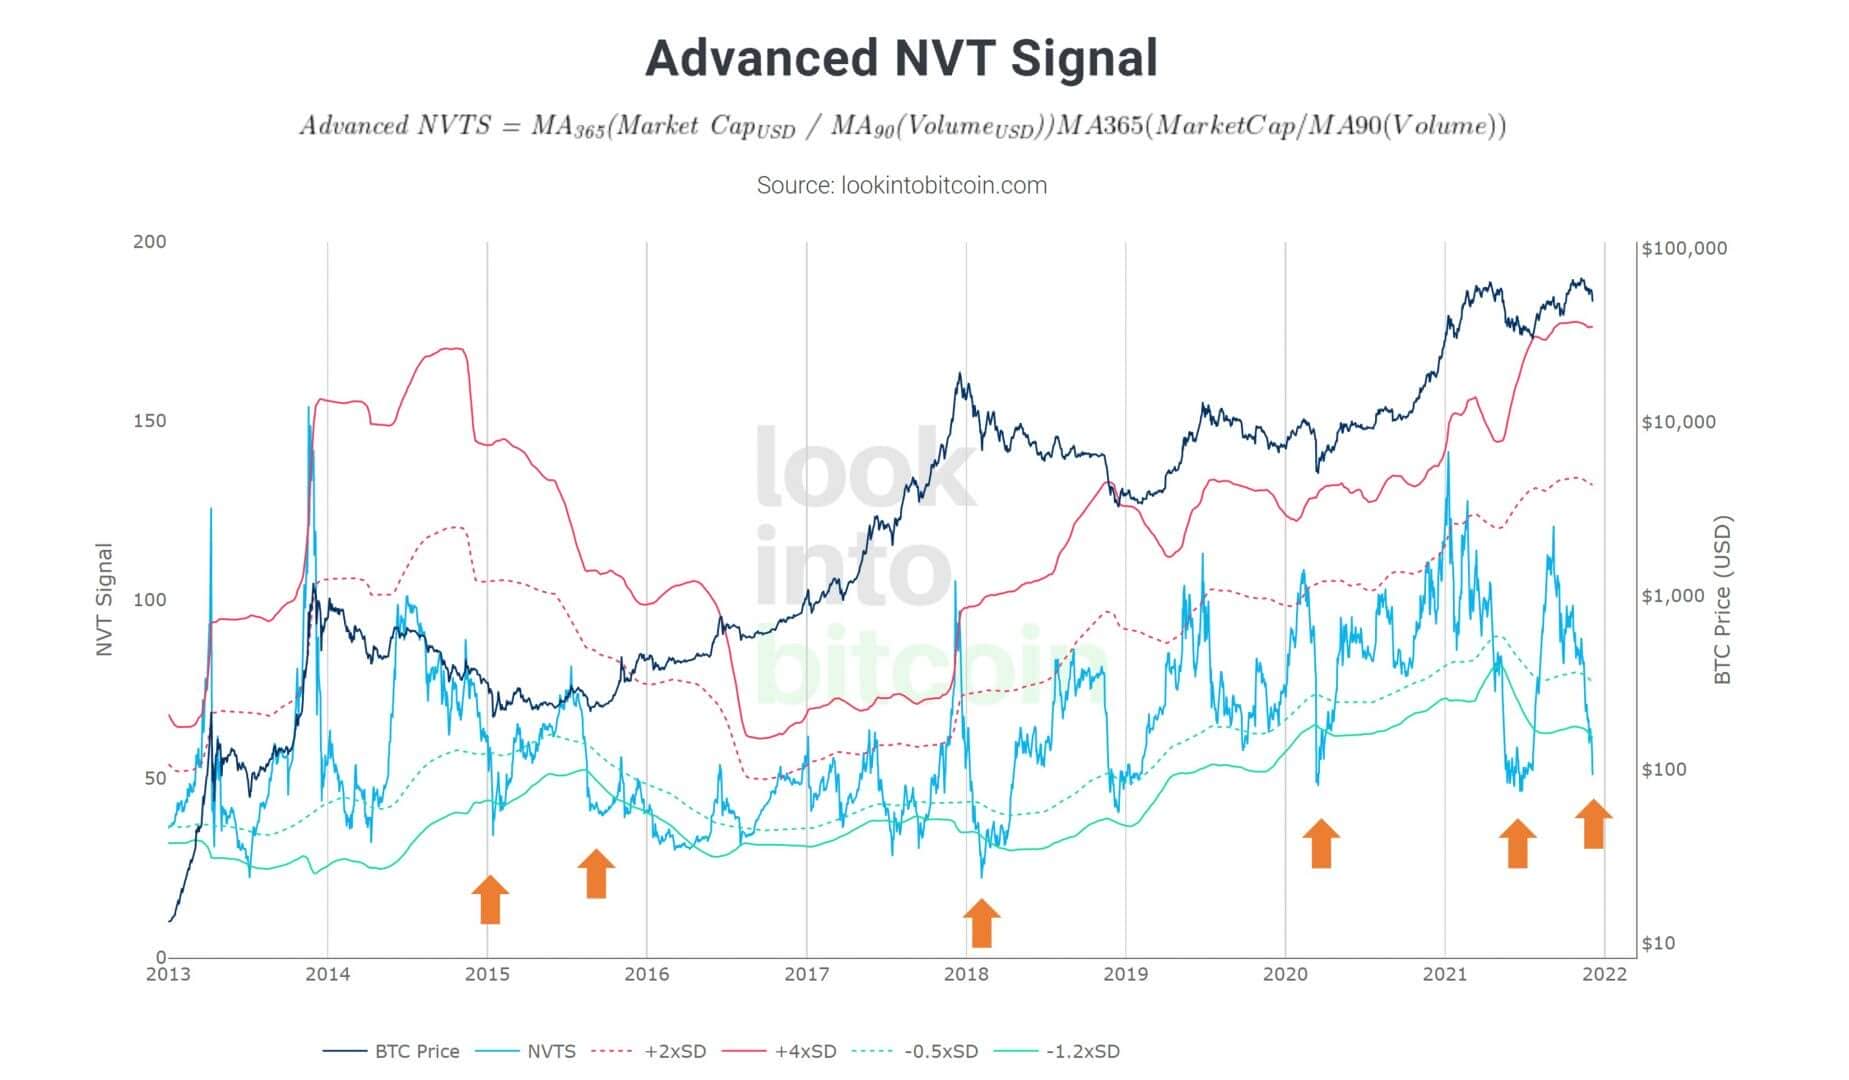 Bitcoin (BTC) est fortement survendu à en croire le signal NVT avancé, avec un fort rebond attendu.